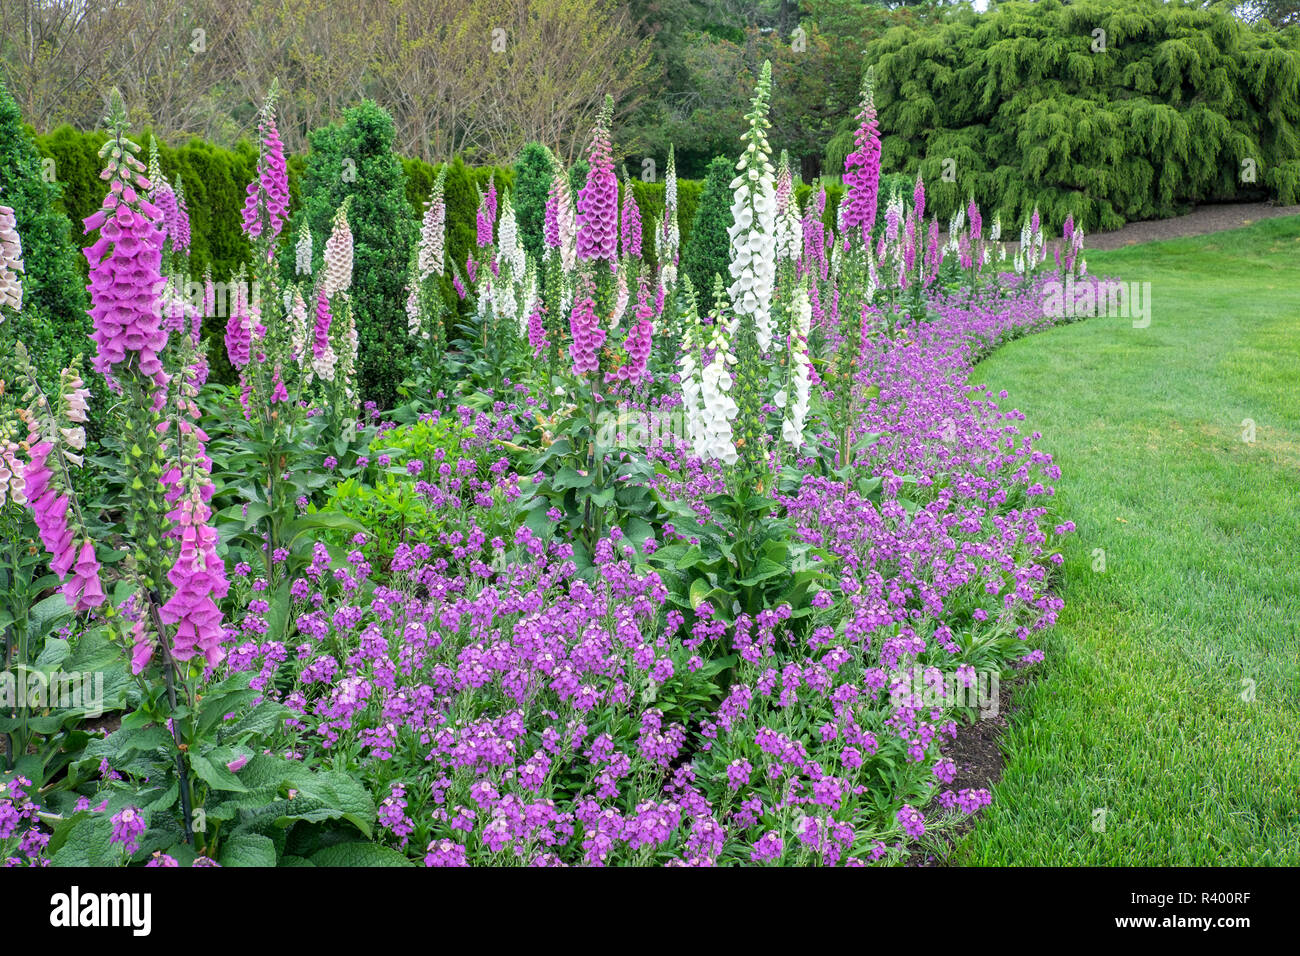 Longwood Gardens, spring flowers, Kennett Square, Pennsylvania, USA Stock Photo